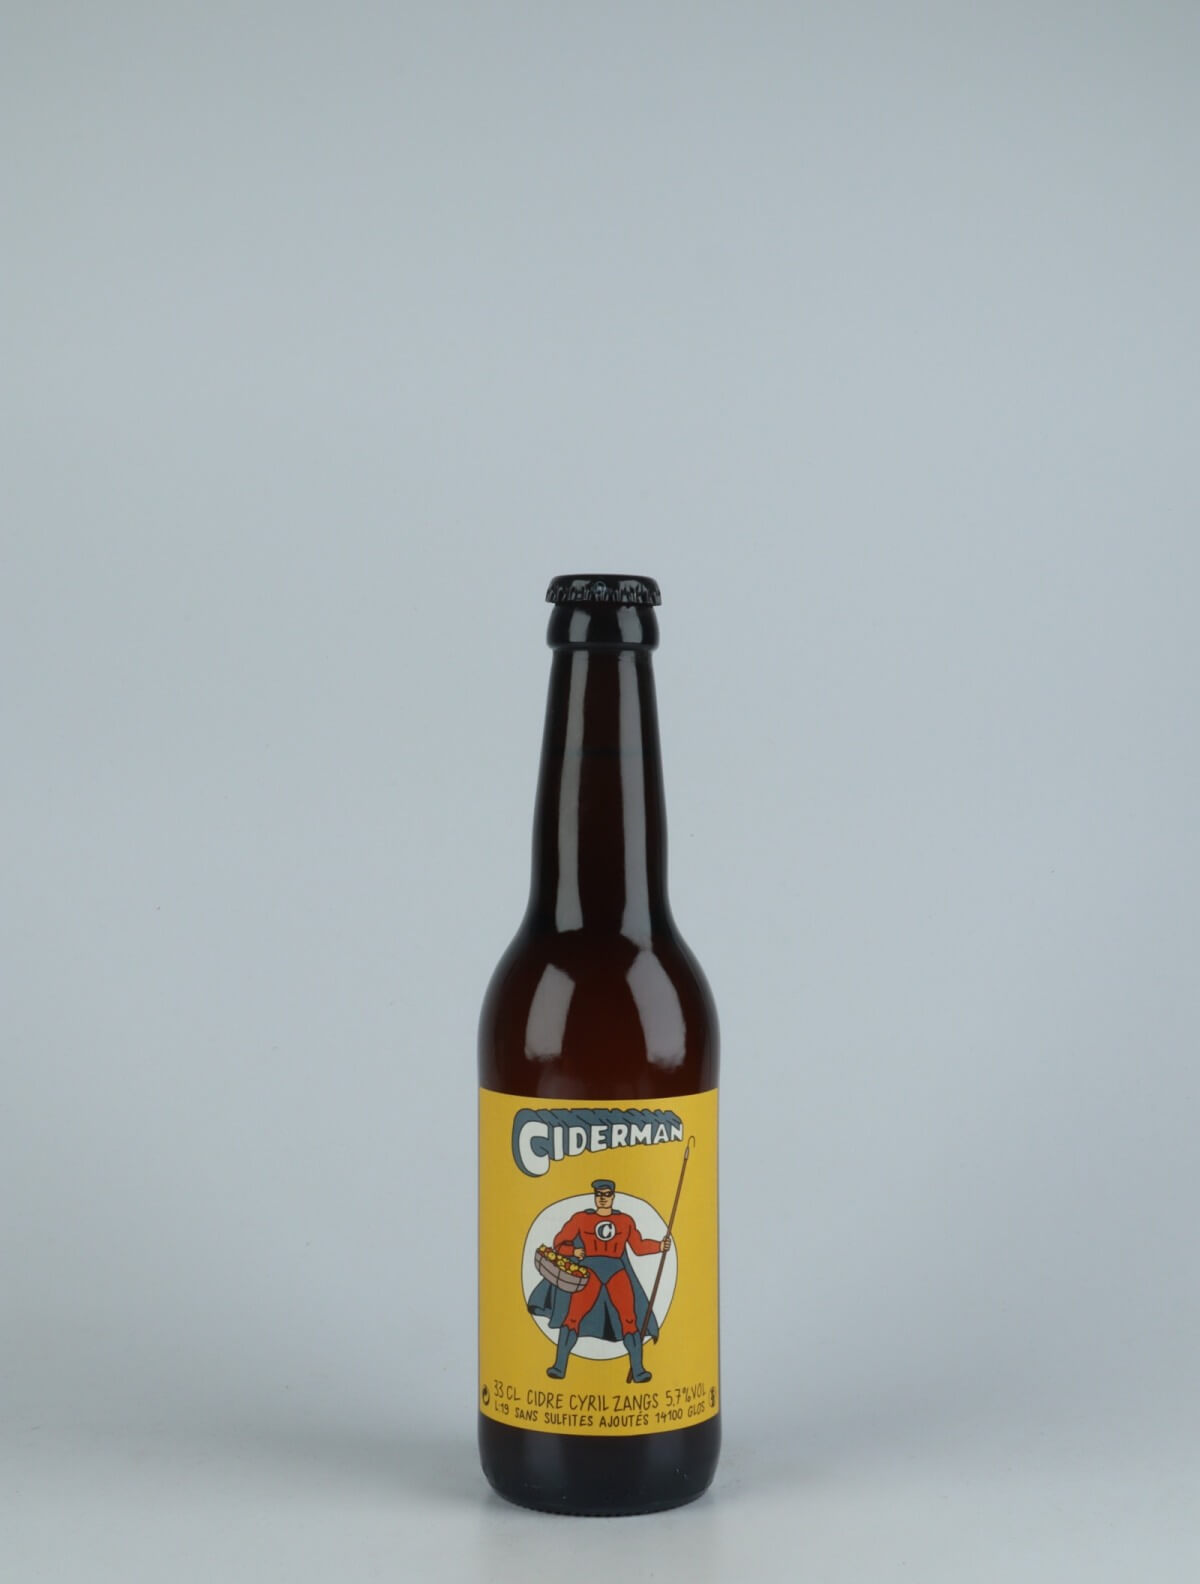 En flaske 2019 Ciderman Cider fra Cyril Zangs, Normandiet i Frankrig